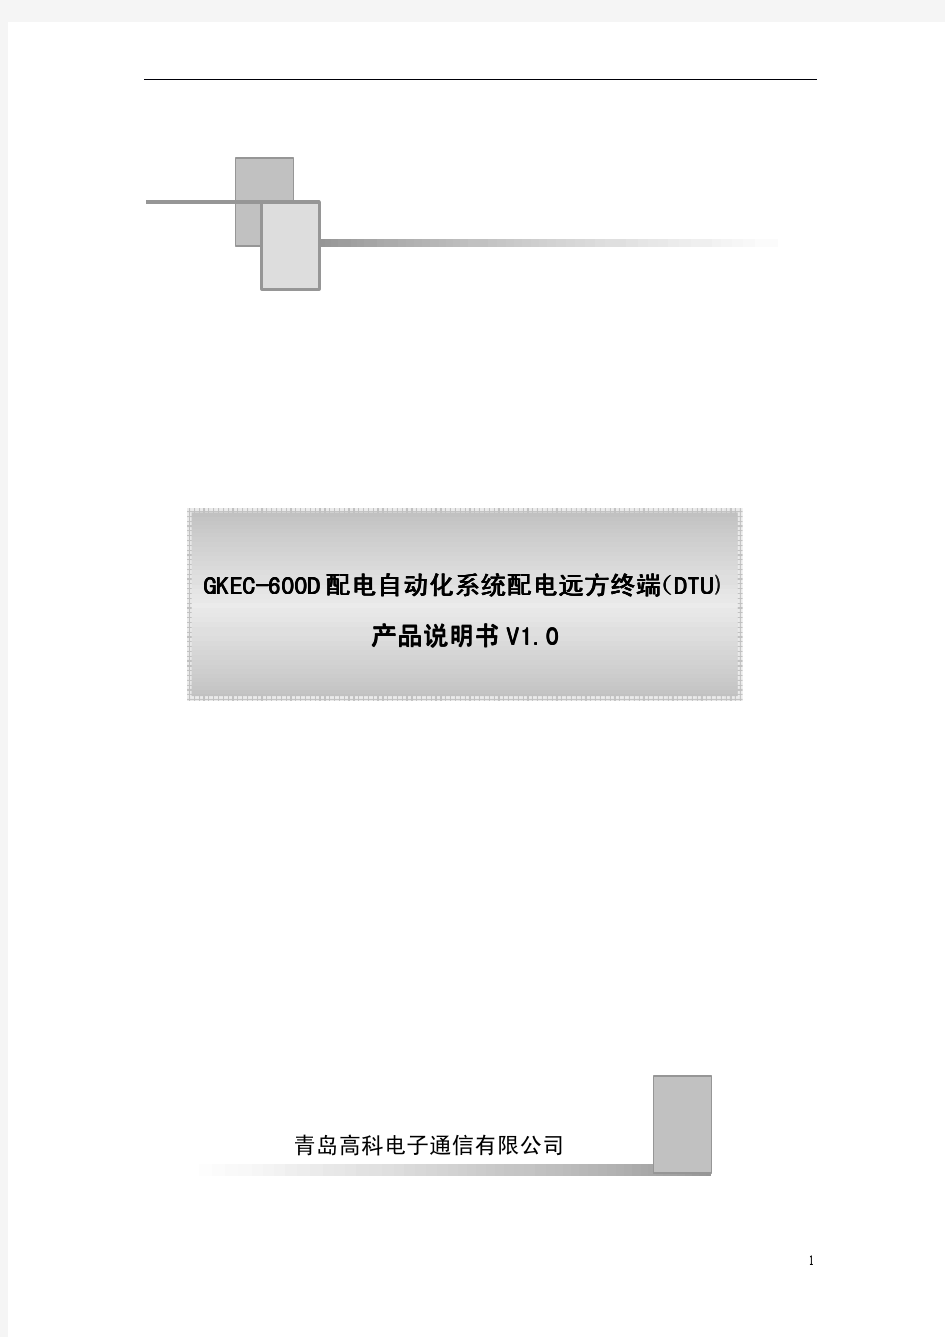 GKEC-600D配电自动化系统配电远方终端(DTU)说明书